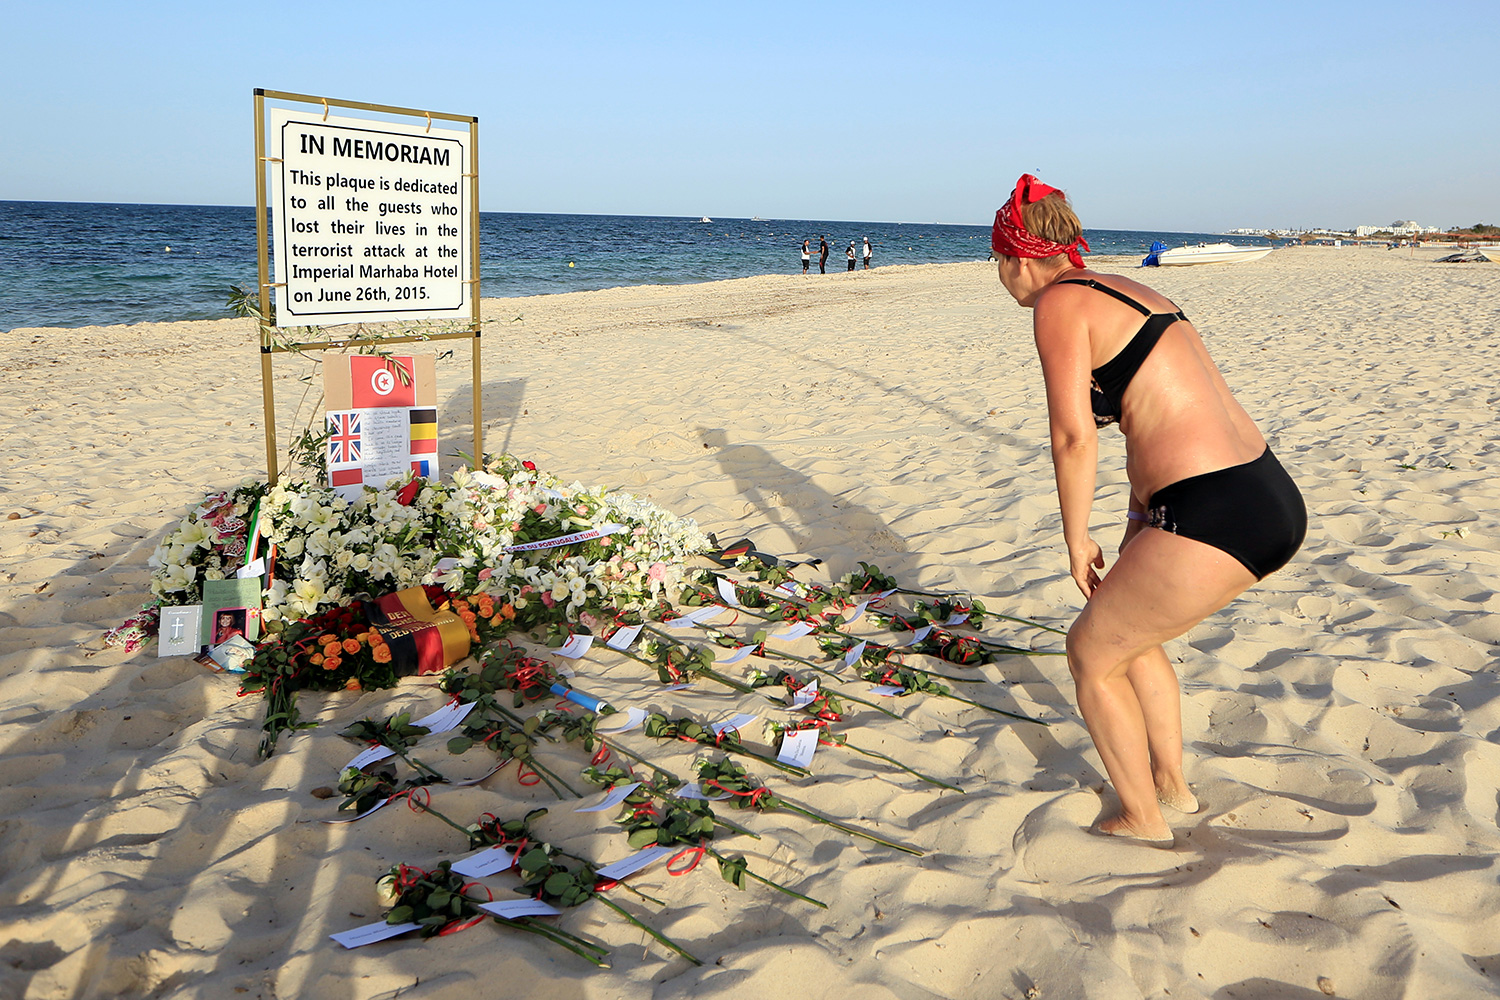 La policía retrasó su llegada de forma «deliberada e injustificada» al atentado de la playa de Túnez